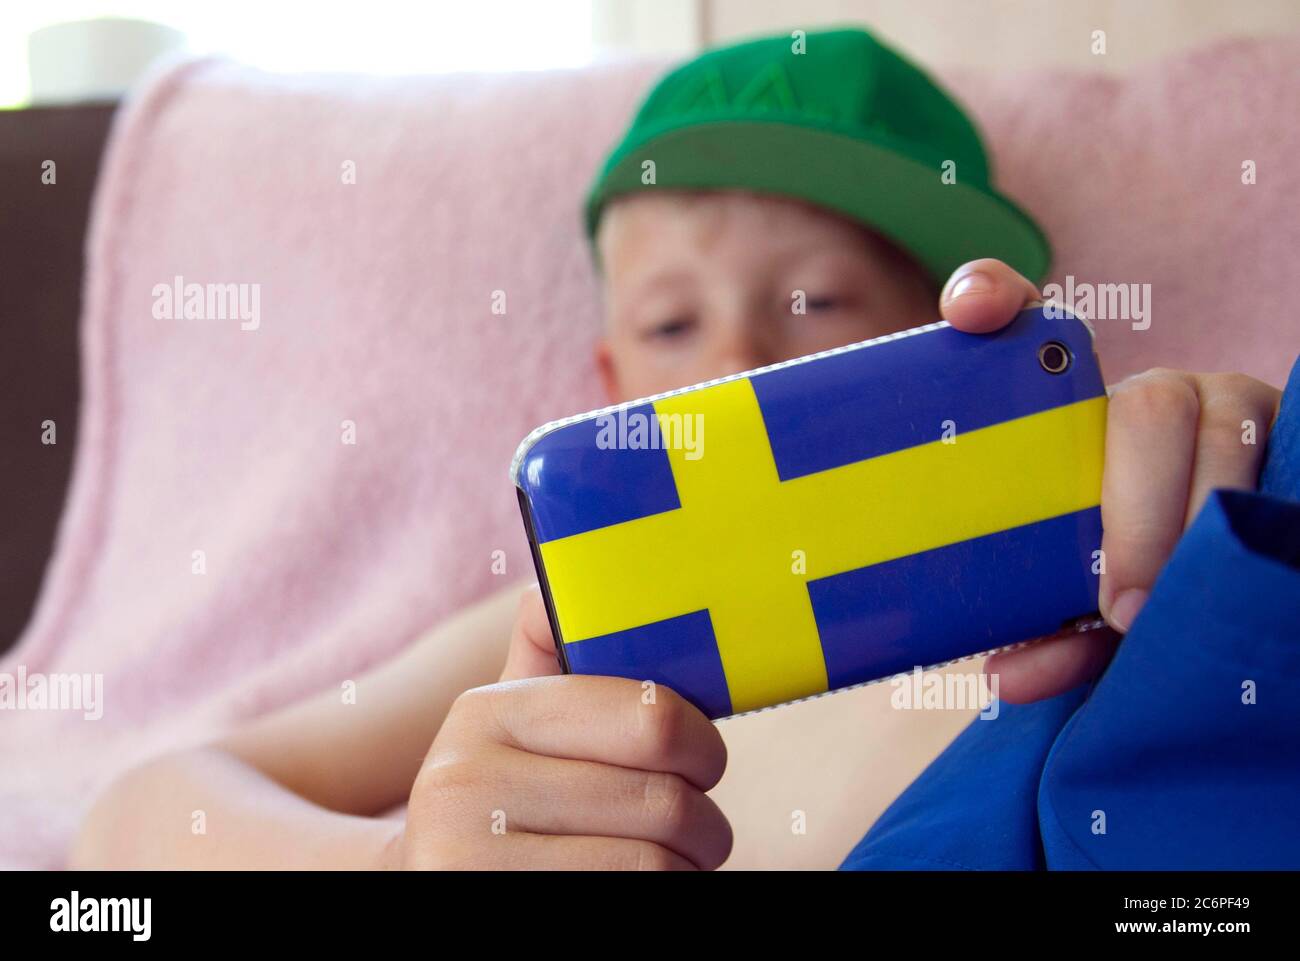 Ein kleiner Kerl, der mit seinem Handy im Internet surft, mit einer Handyhülle in Form der schwedischen Flagge. Foto Jeppe Gustafsson Stockfoto